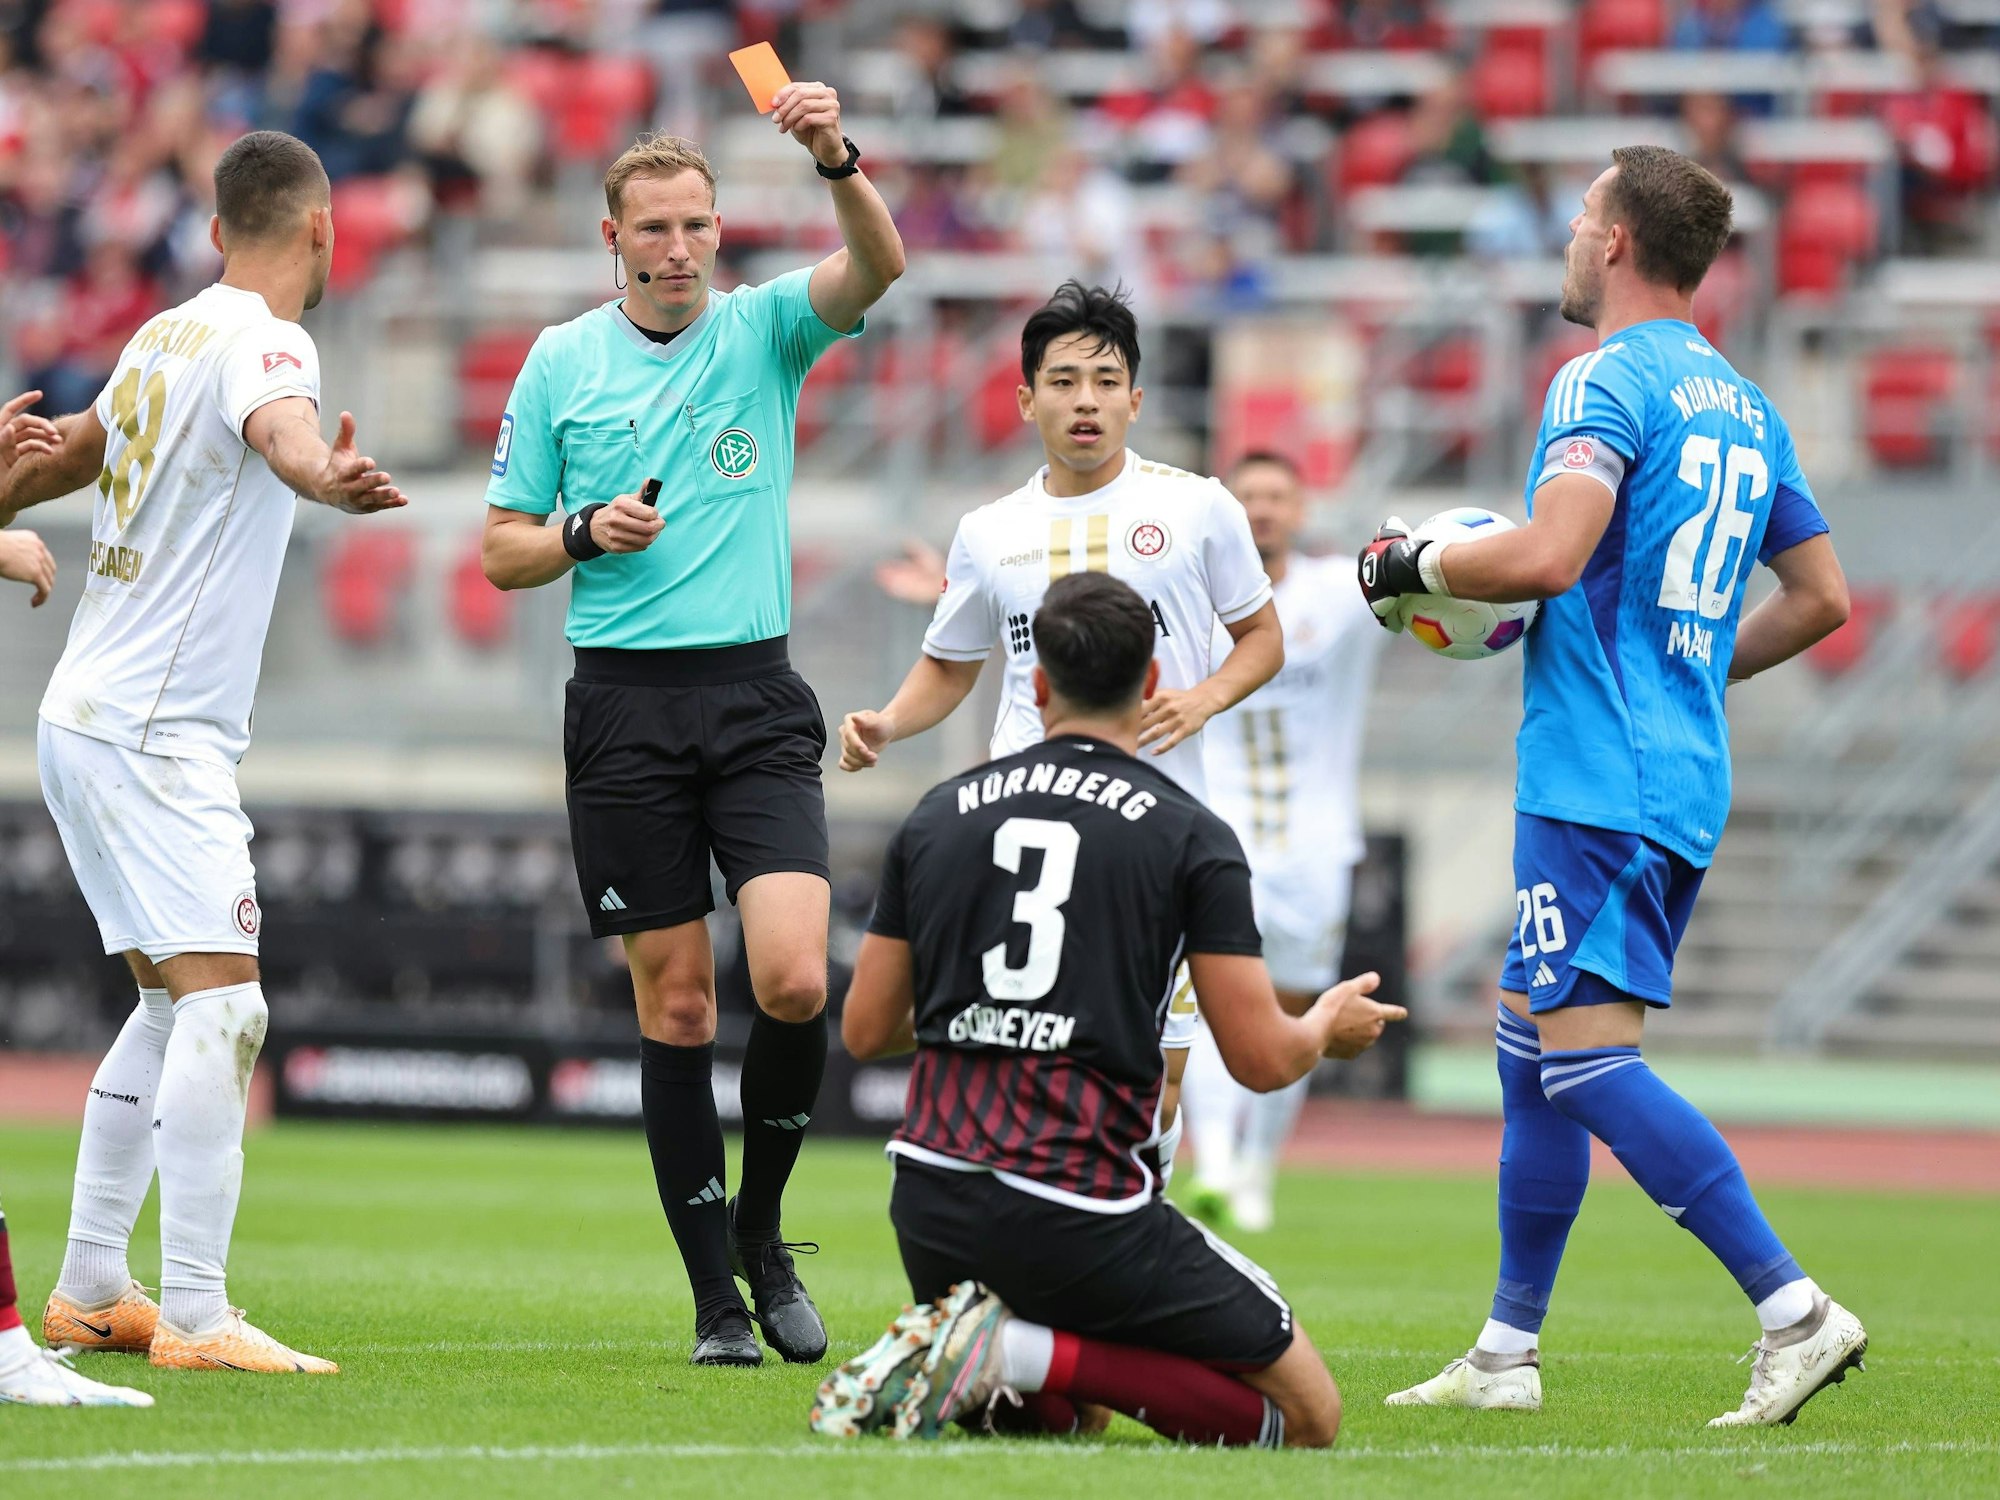 Schiedsrichter Martin Petersen zeigt dem Nürnberger Ahmet Gürleyen im Spiel gegen Wehen Wiesbaden die Rote Karte.